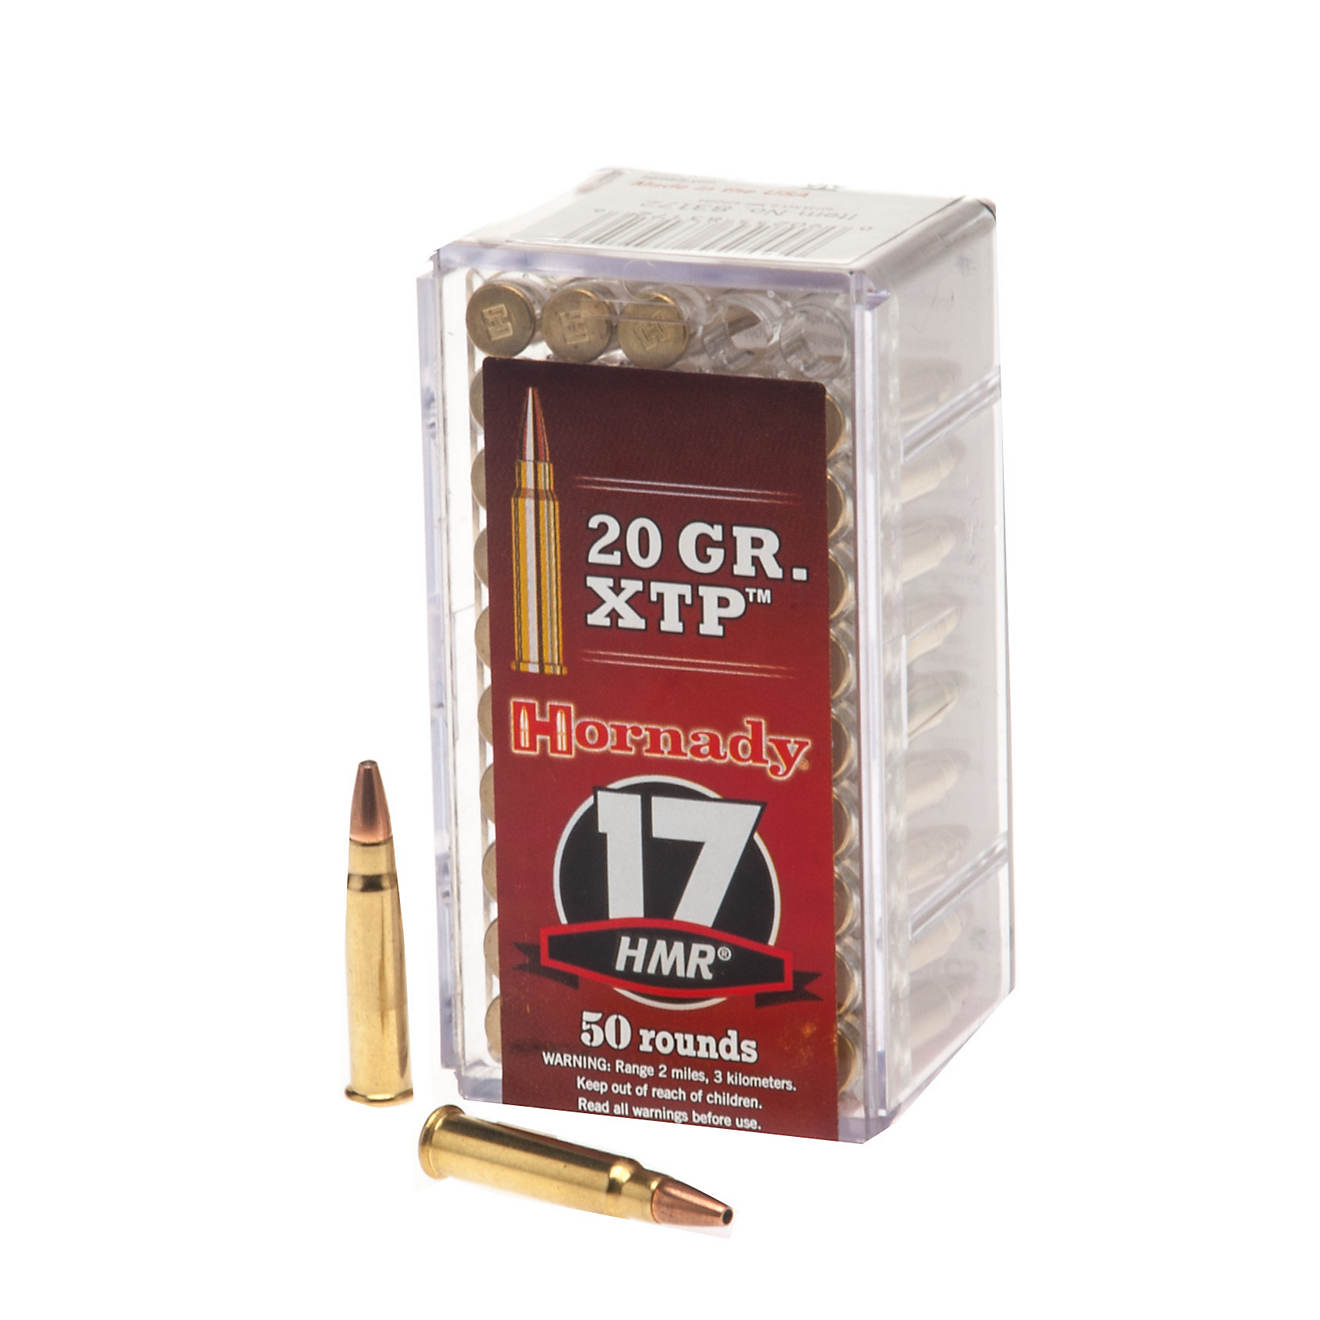 Hornady Hp Xtp® 17 Hmr® 20 Grain Rimfire Rifle Ammunition Academy